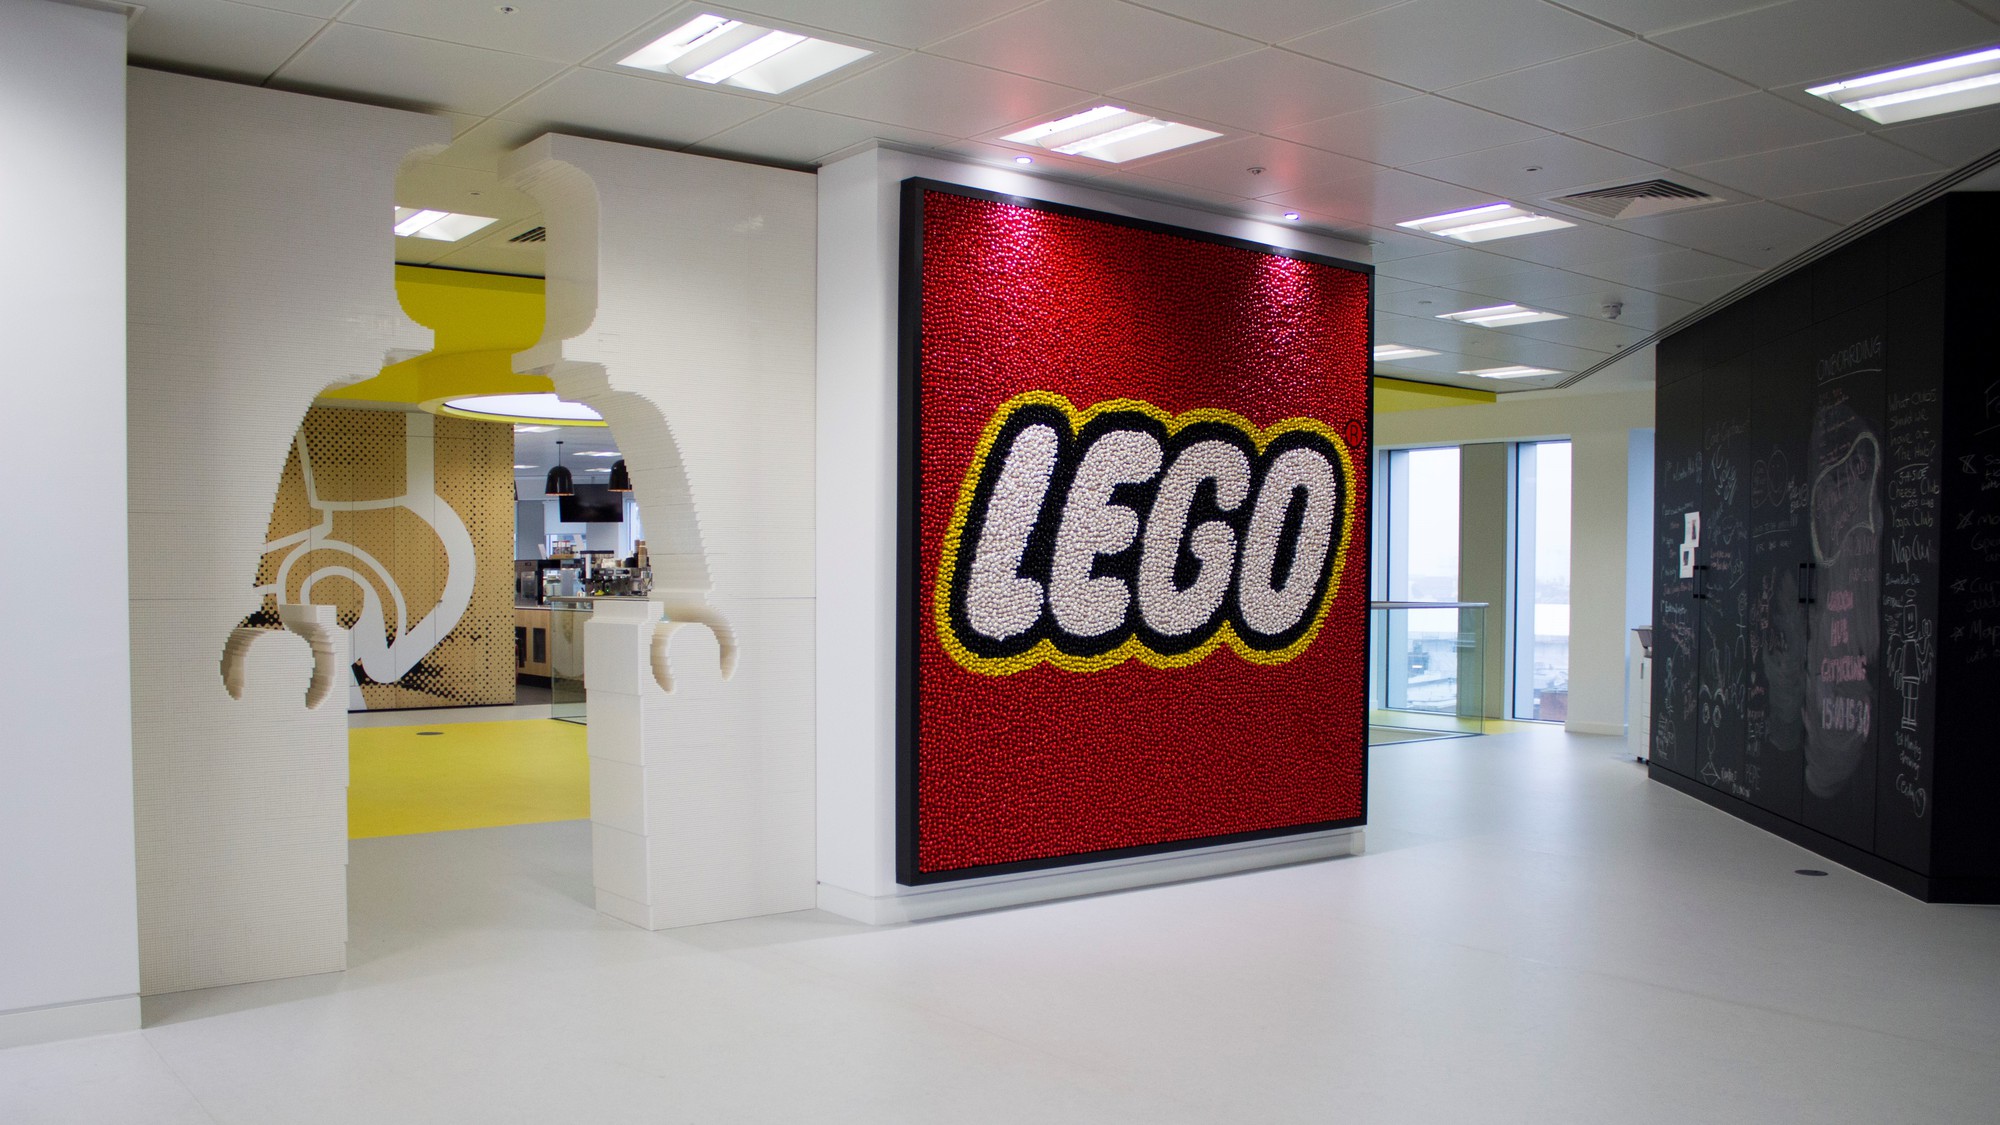 Lego: Từ bờ vực phá sản sang thành công rực rỡ nhờ chuyển đổi số - Ảnh 3.